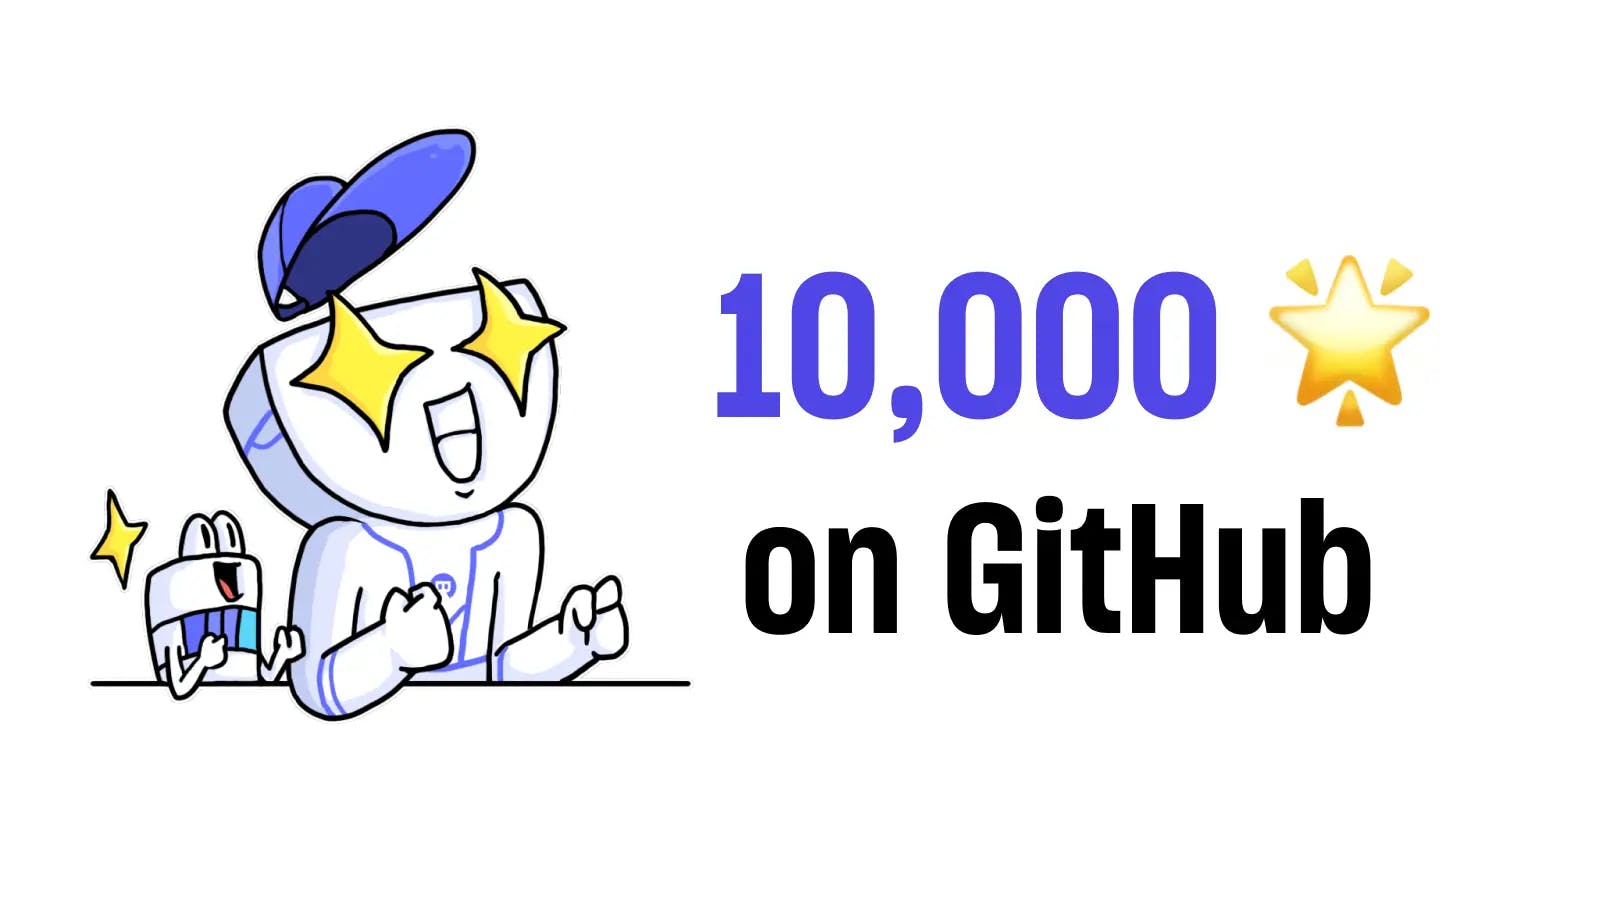 Bytebase Surpasses 10,000 Stars on GitHub